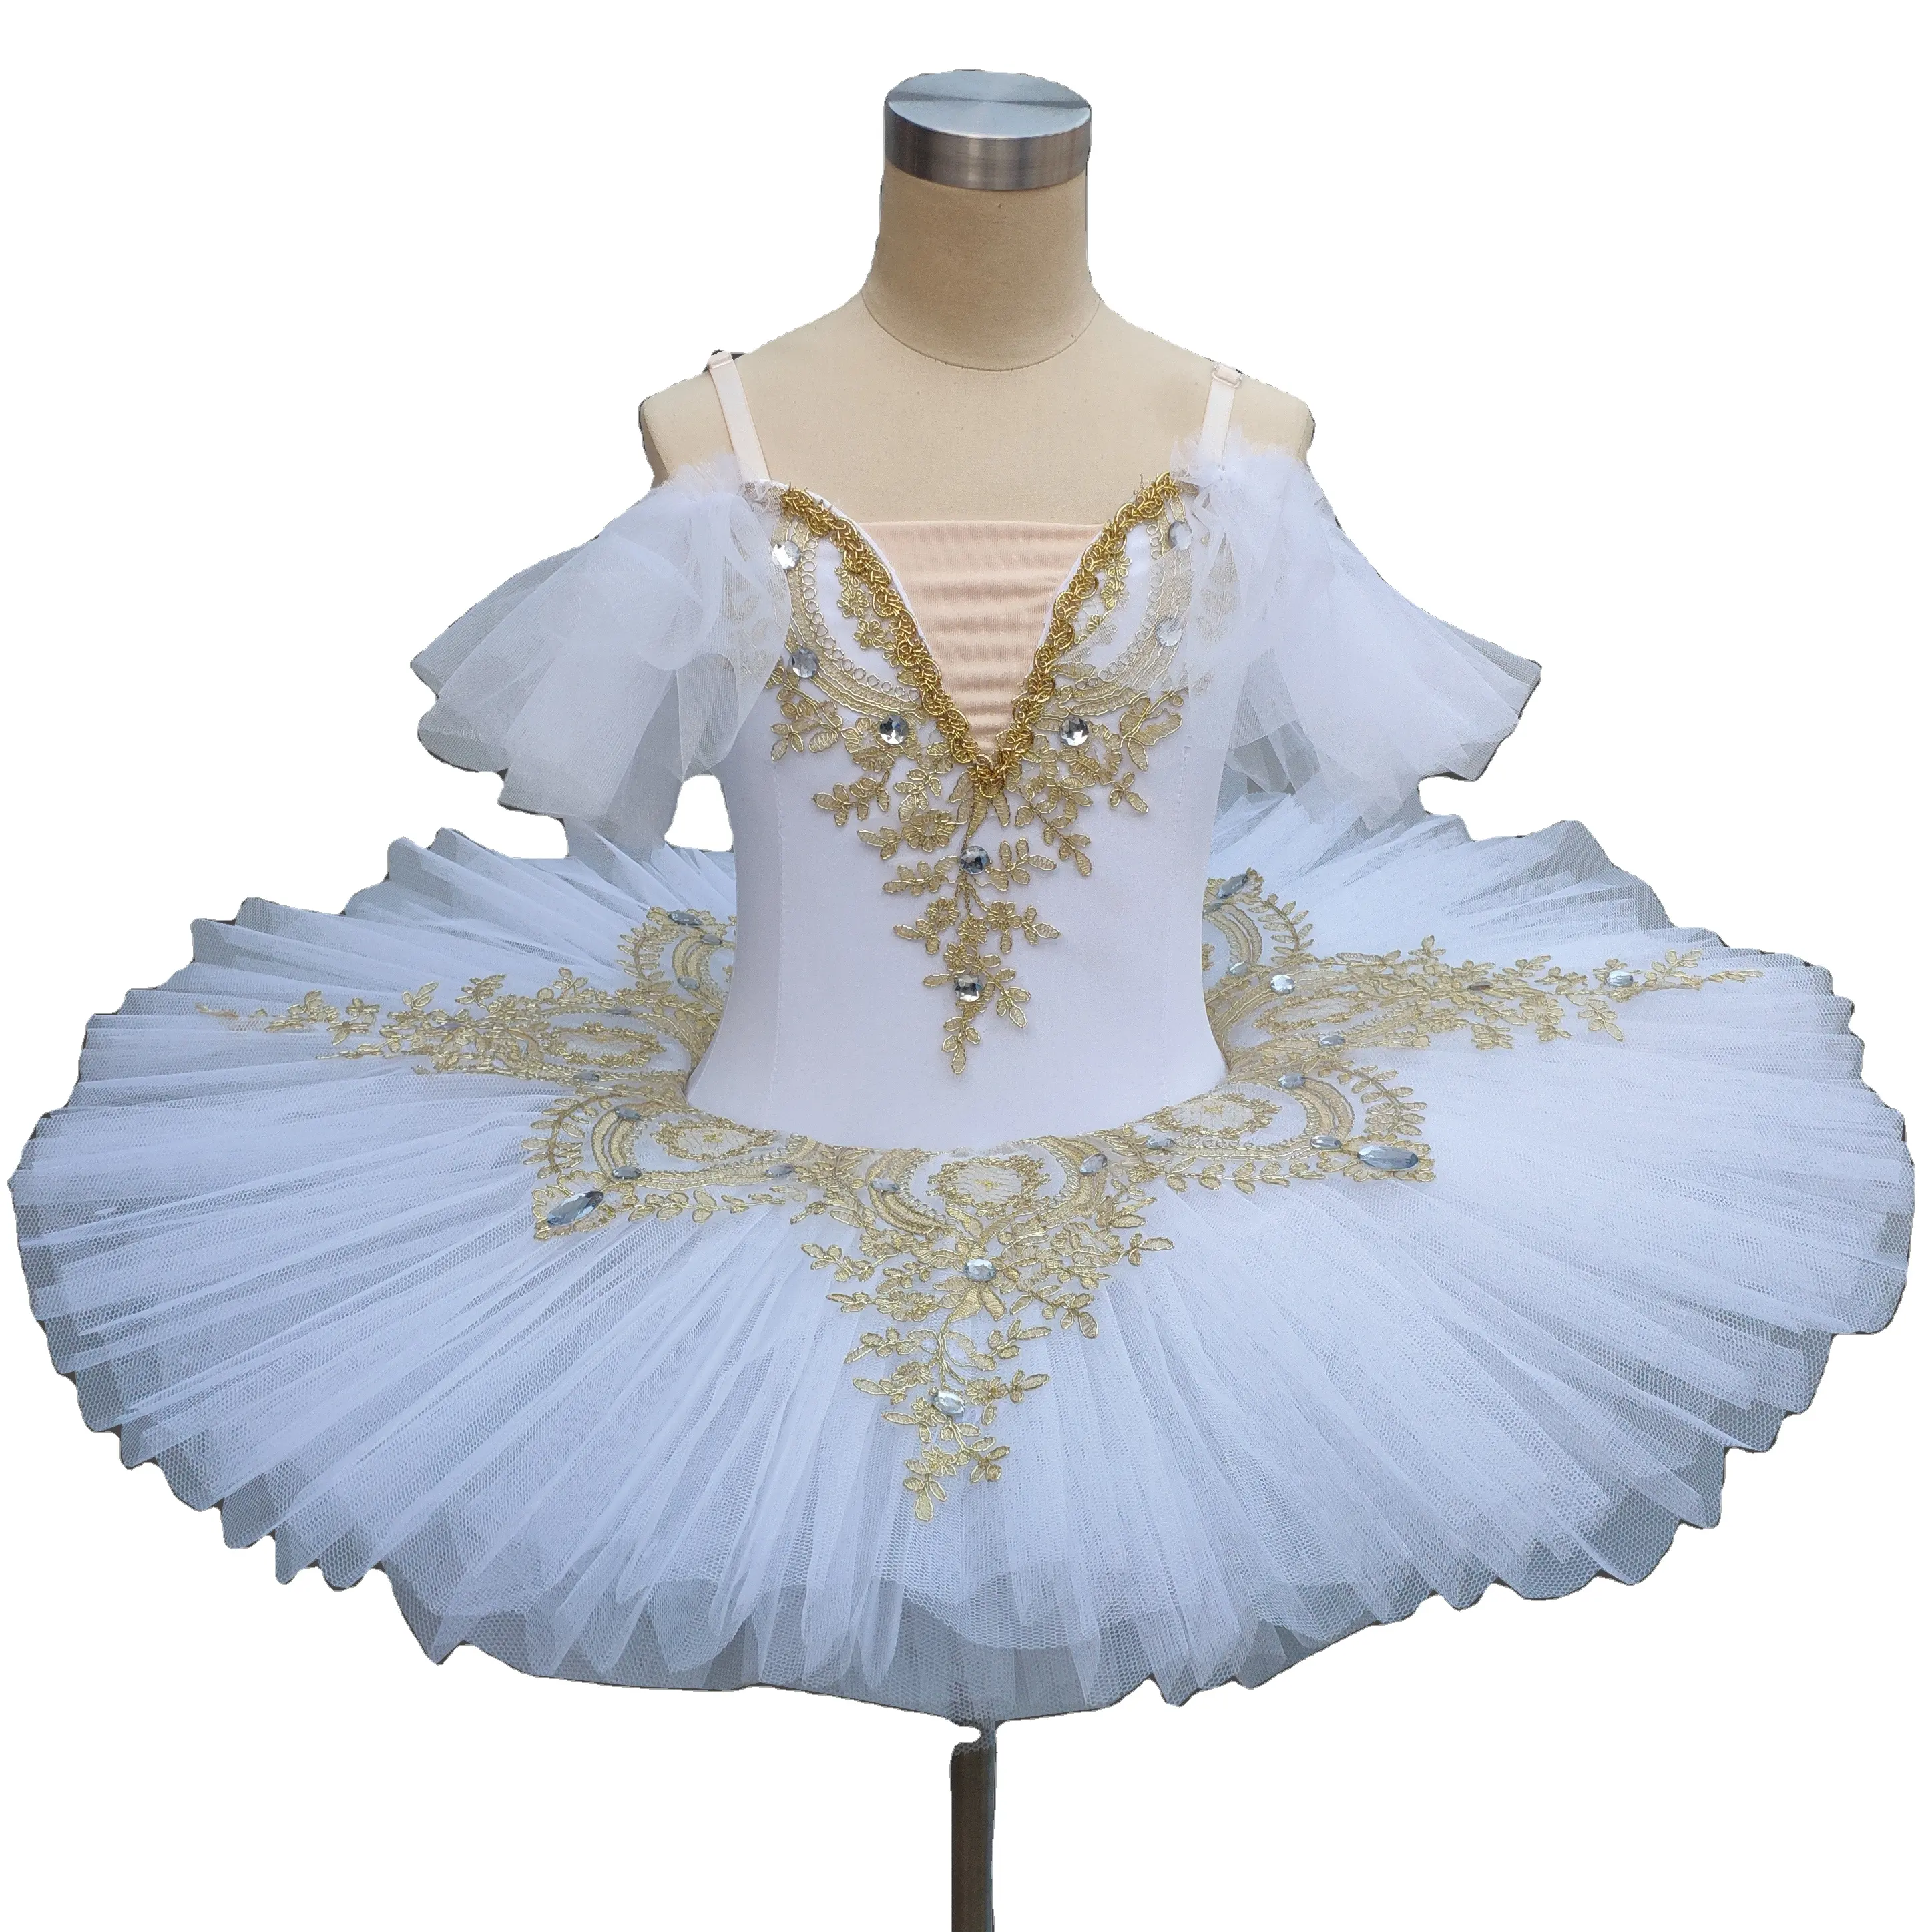 Leotards saia tutu de balé profissional, traje de balé cisne para meninas, bailarina profissional, clássica